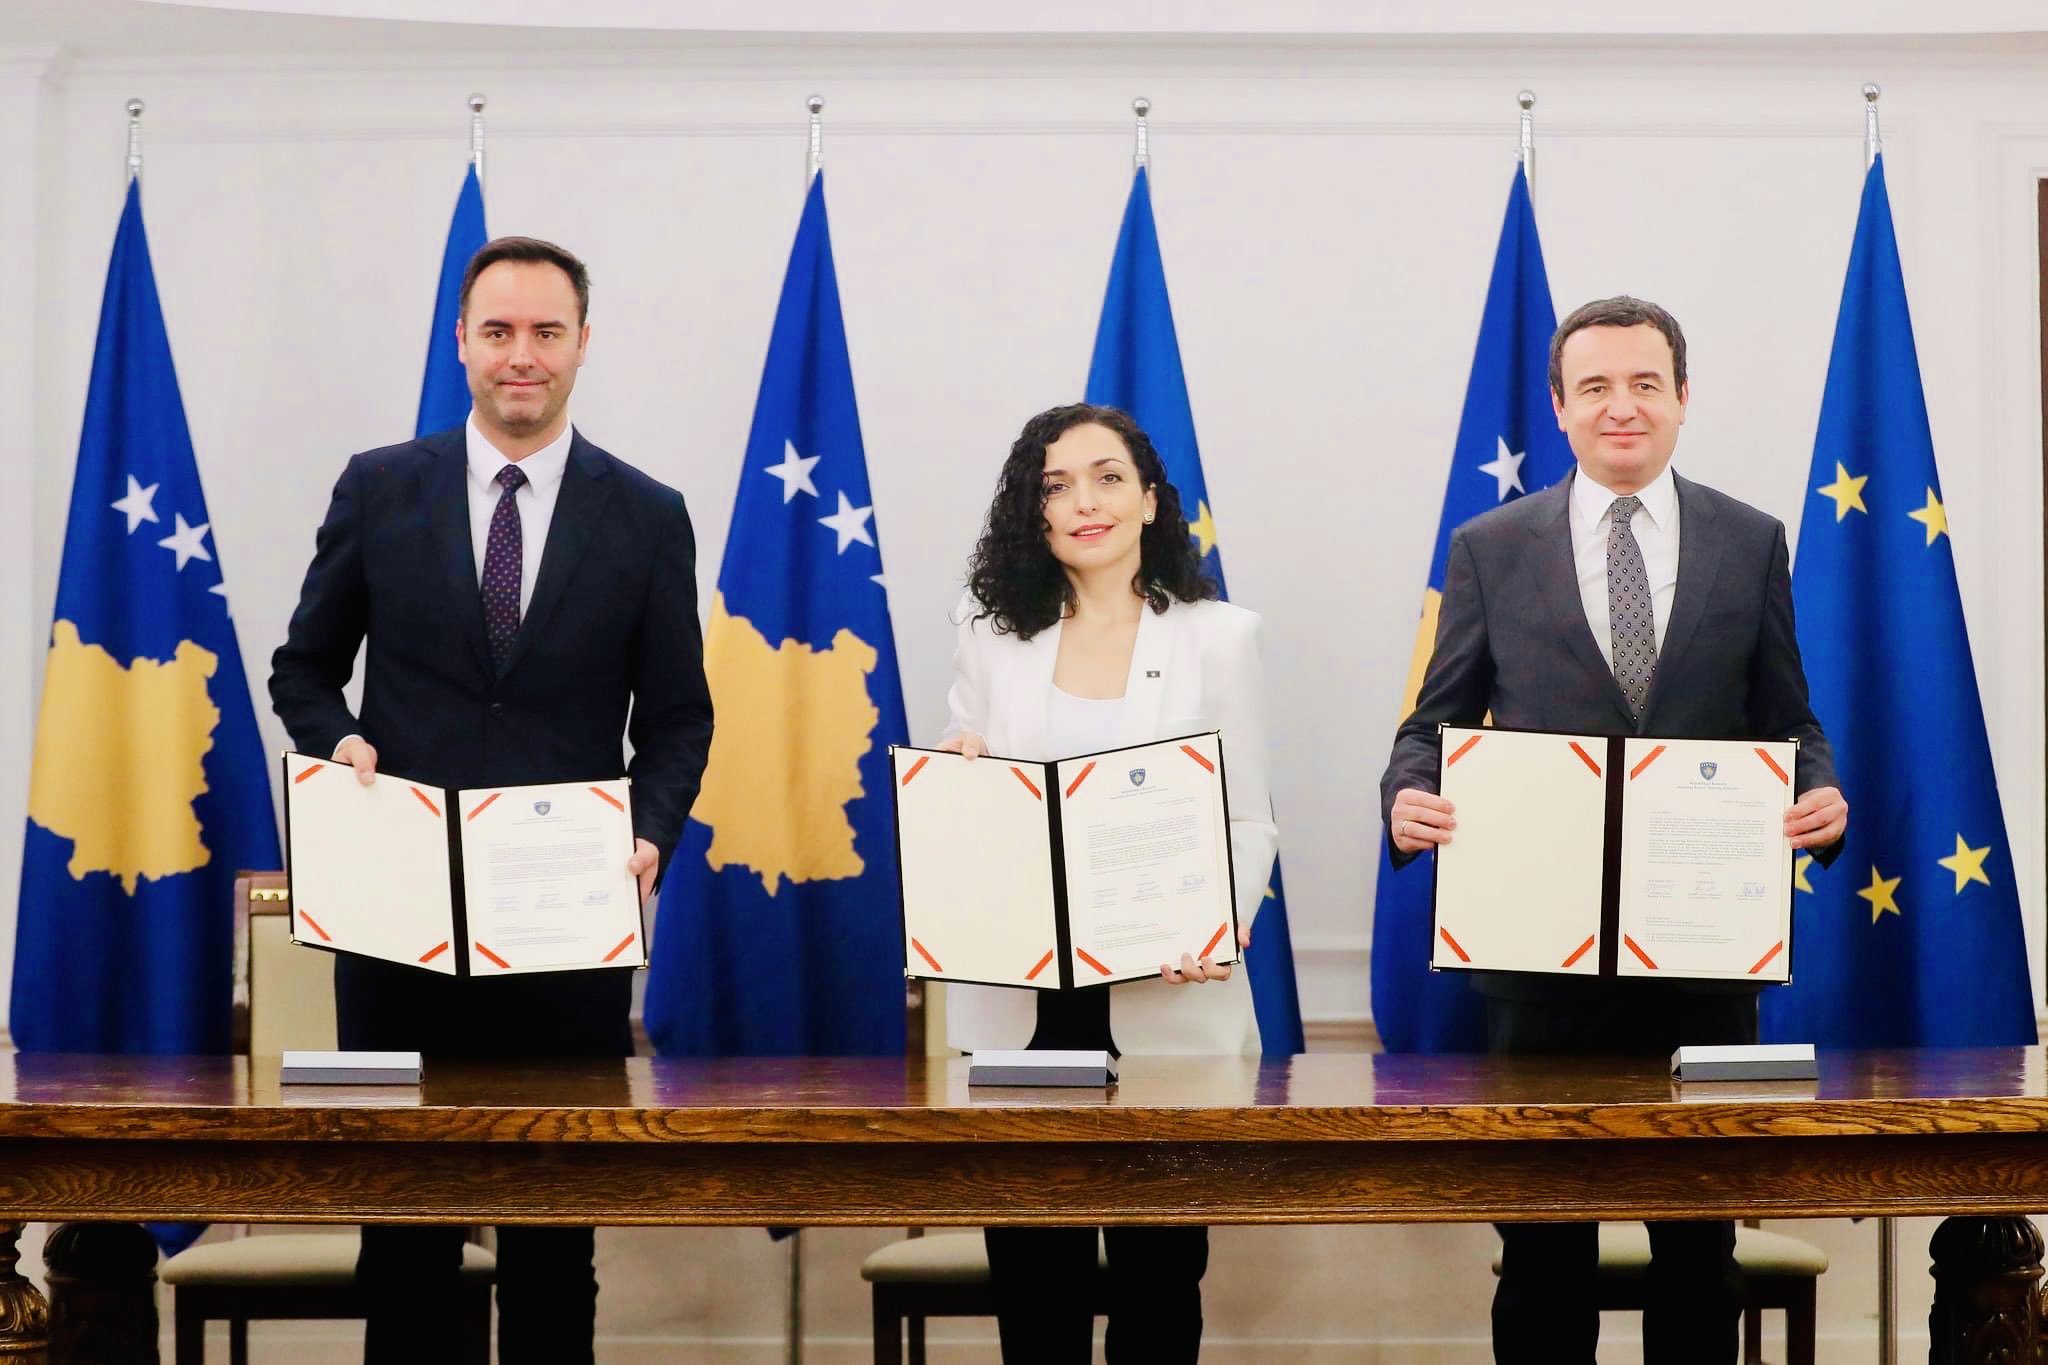 Kosovo solicita formalmente el ingreso en la UE: "Es un día histórico"